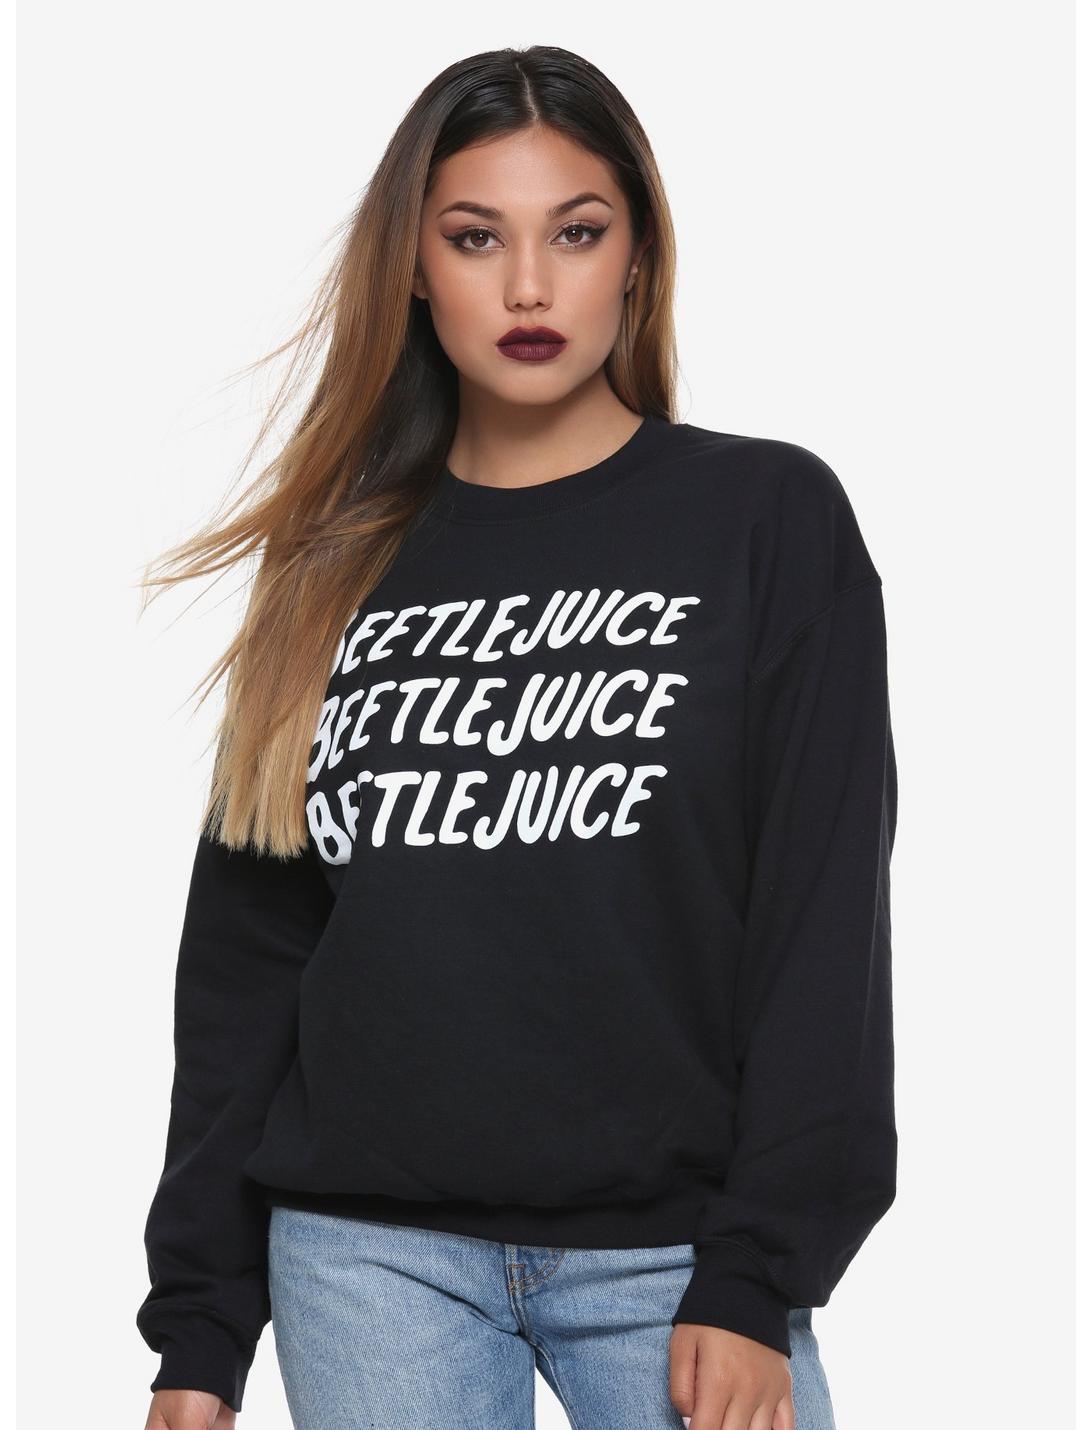 Beetlejuice Name Girls Sweatshirt